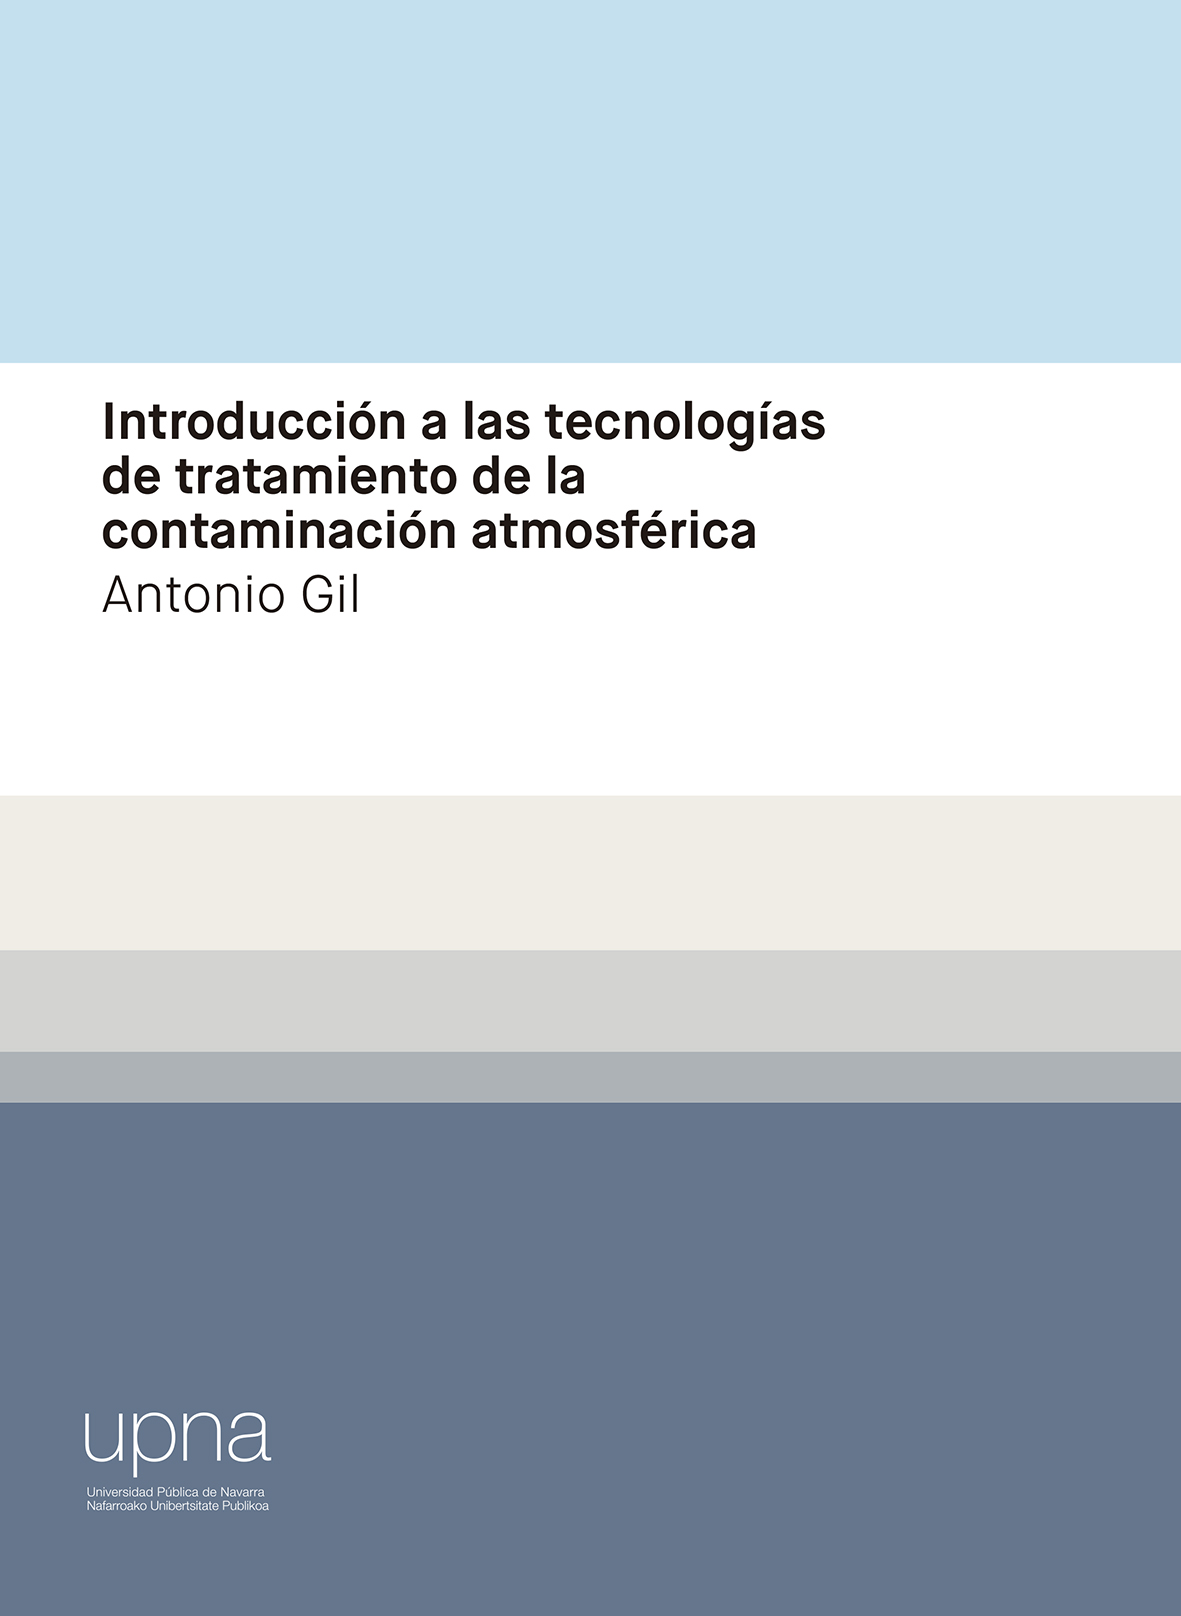 Imagen de portada del libro Introducción a las tecnologías de tratamiento de la contaminación atmosférica